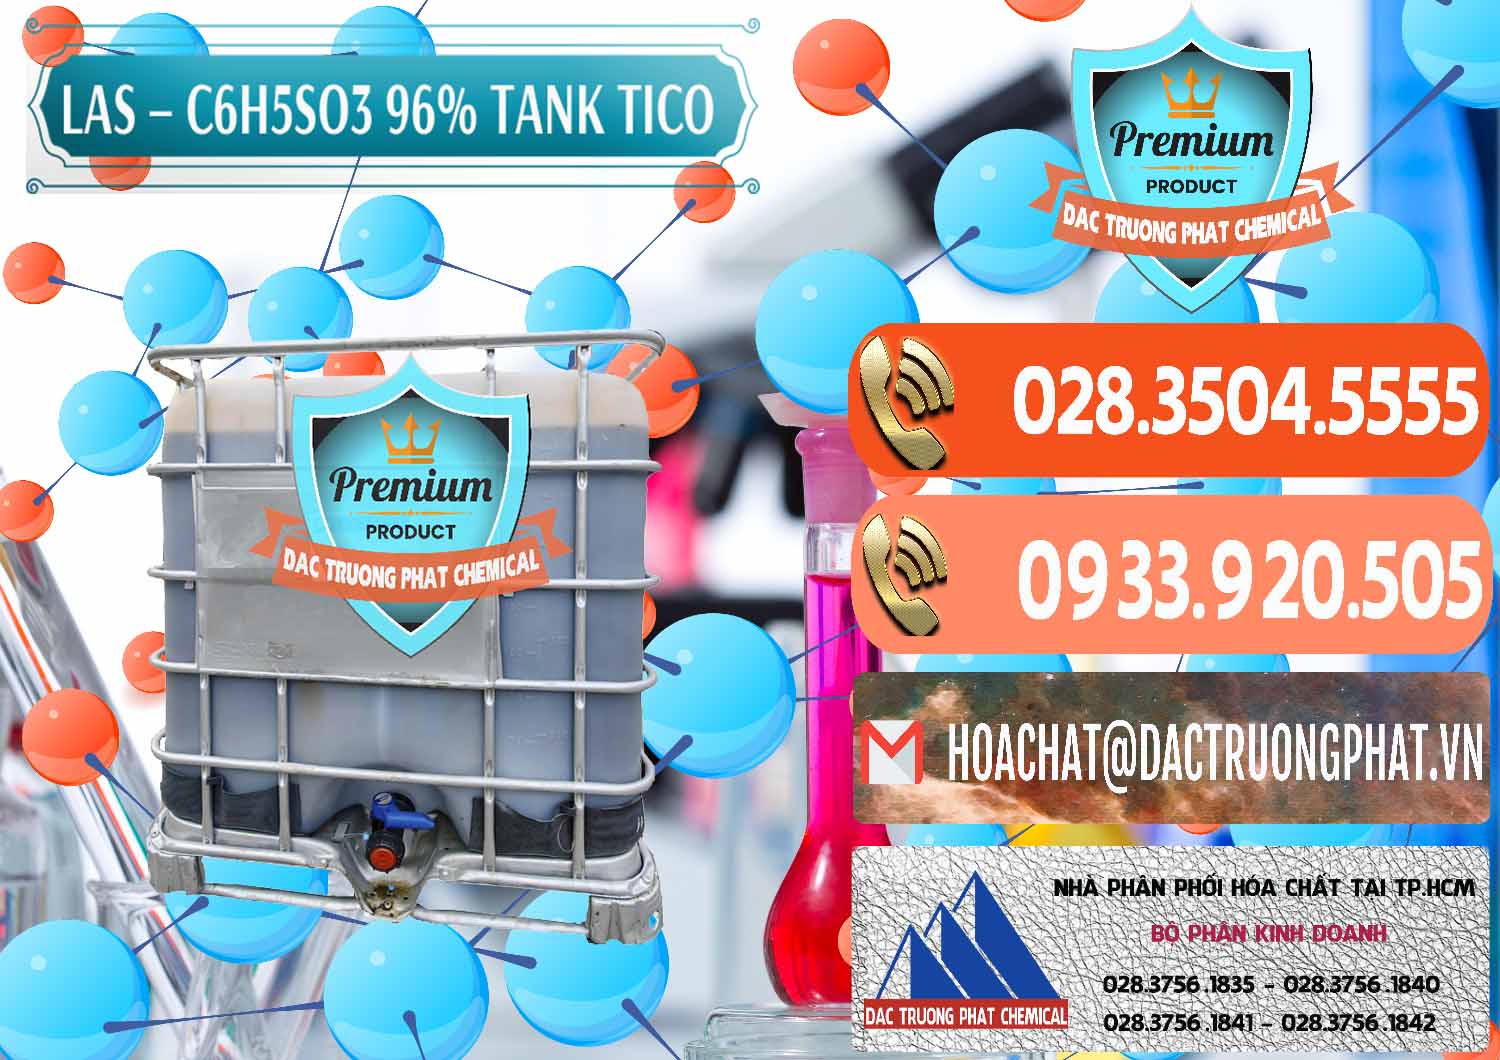 Nơi kinh doanh & bán Chất tạo bọt Las P Tico Tank IBC Bồn Việt Nam - 0488 - Cty kinh doanh ( phân phối ) hóa chất tại TP.HCM - hoachatmientay.com